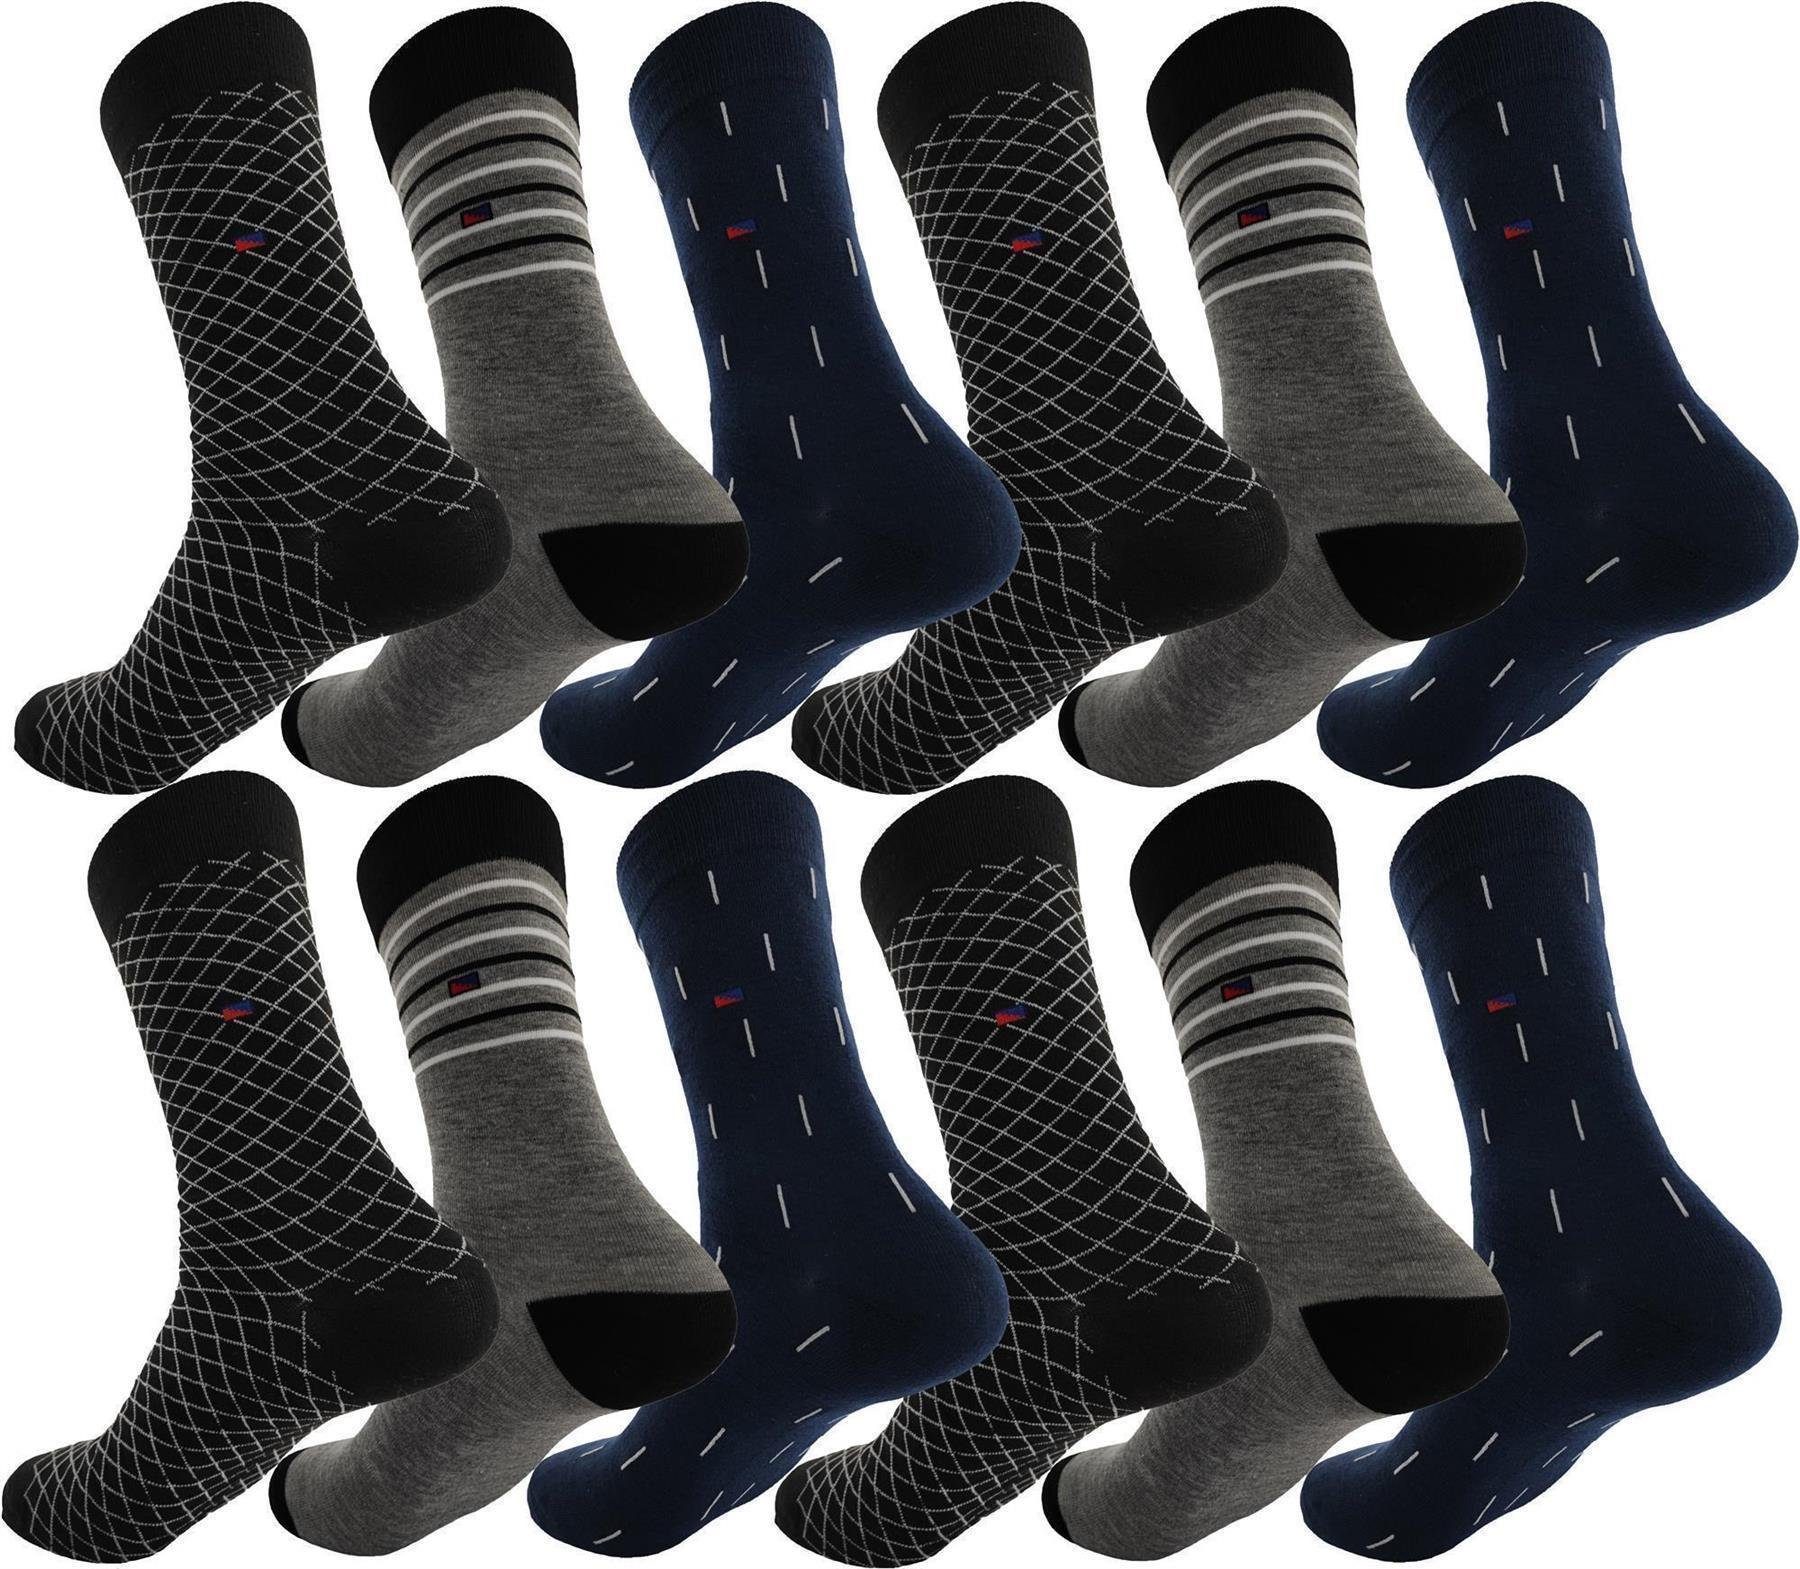 Socken 12 Muster EloModa Paar Herren Paar, 12 Sport klassischer Basicsocken Freizeit Form (12-Paar) Mix20